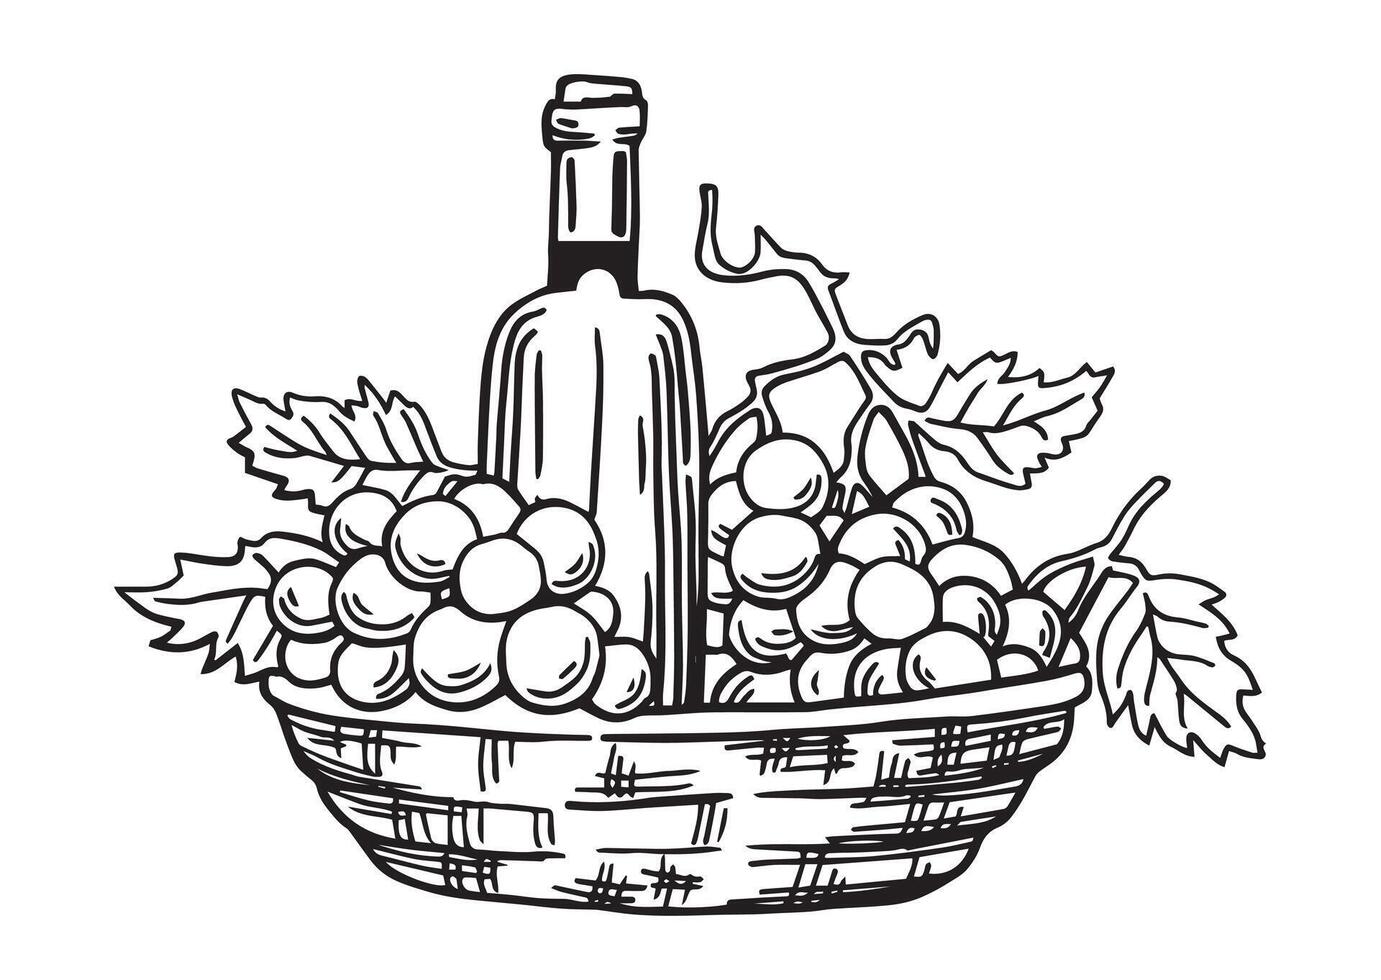 bouteilles de du vin et une panier de les raisins. ancien dessin dans esquisser style. noir et blanc illustration vecteur